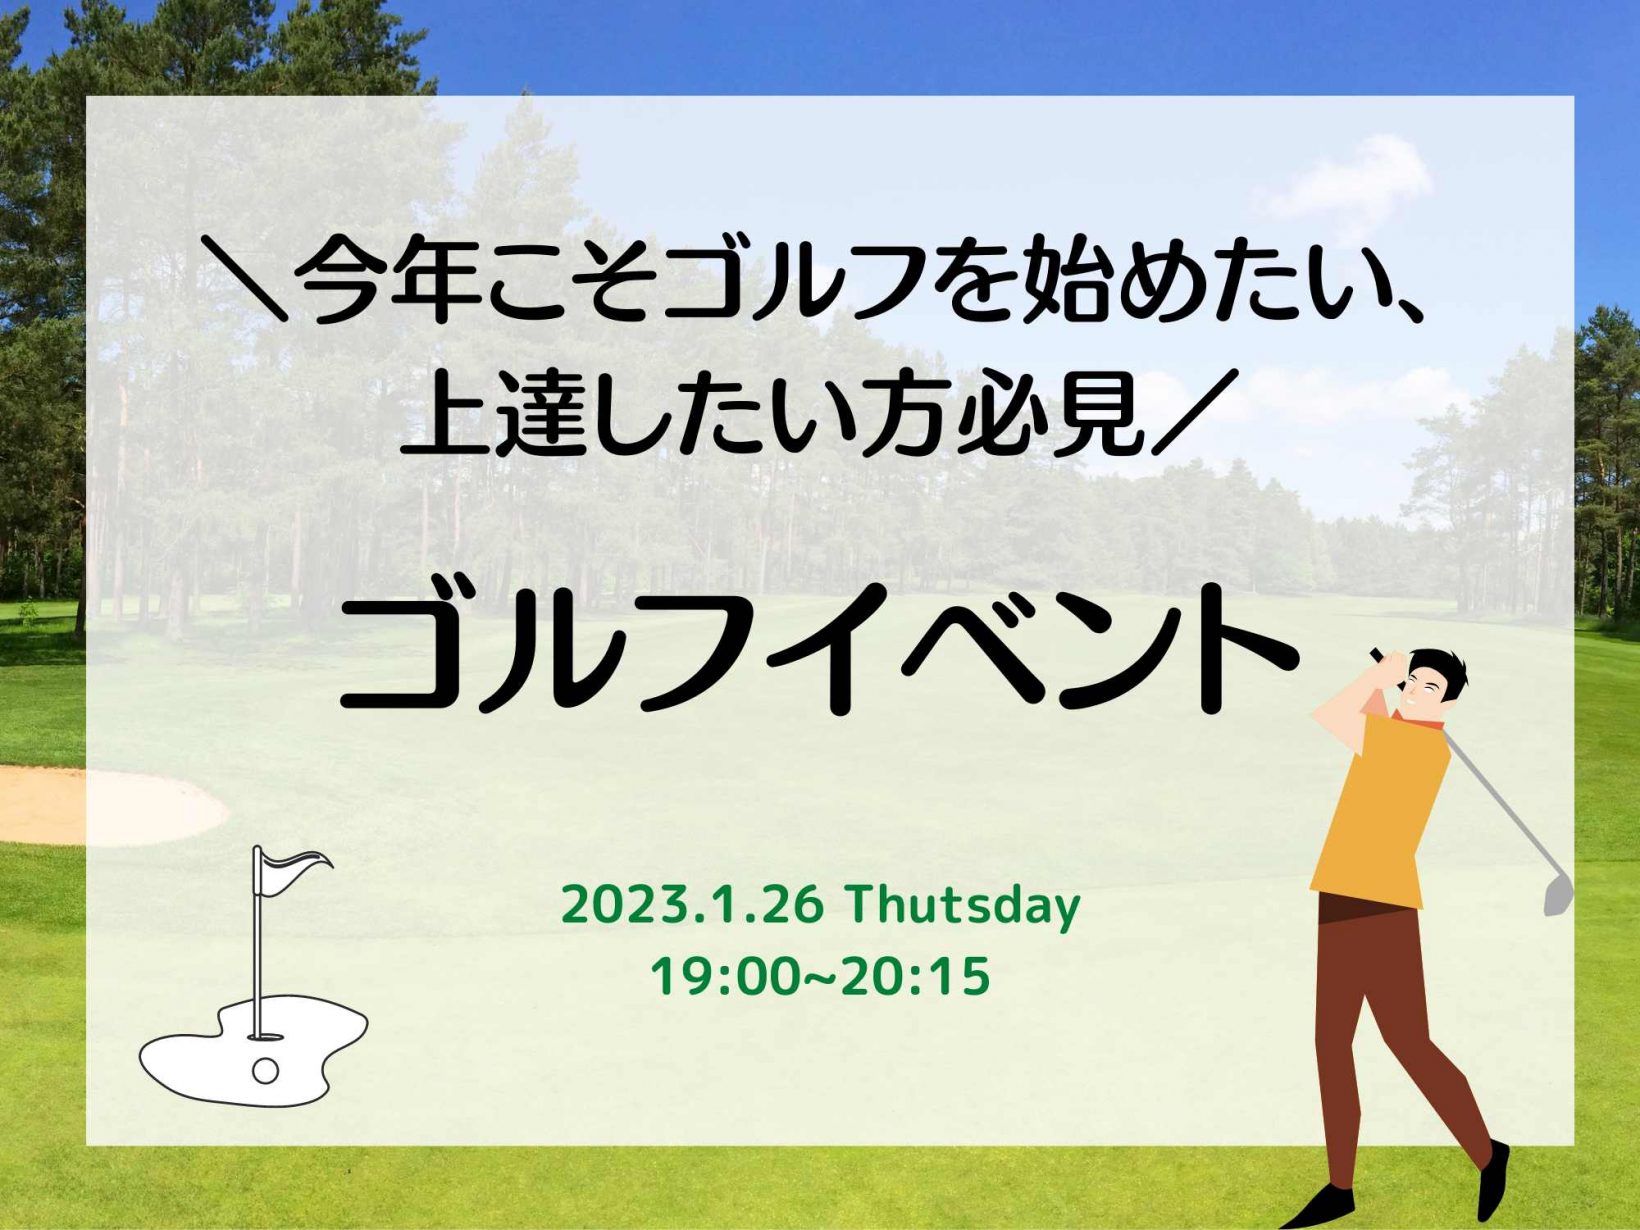 今年こそゴルフを始めたい、上達したい方必見！ゴルフイベント@オンライン開催